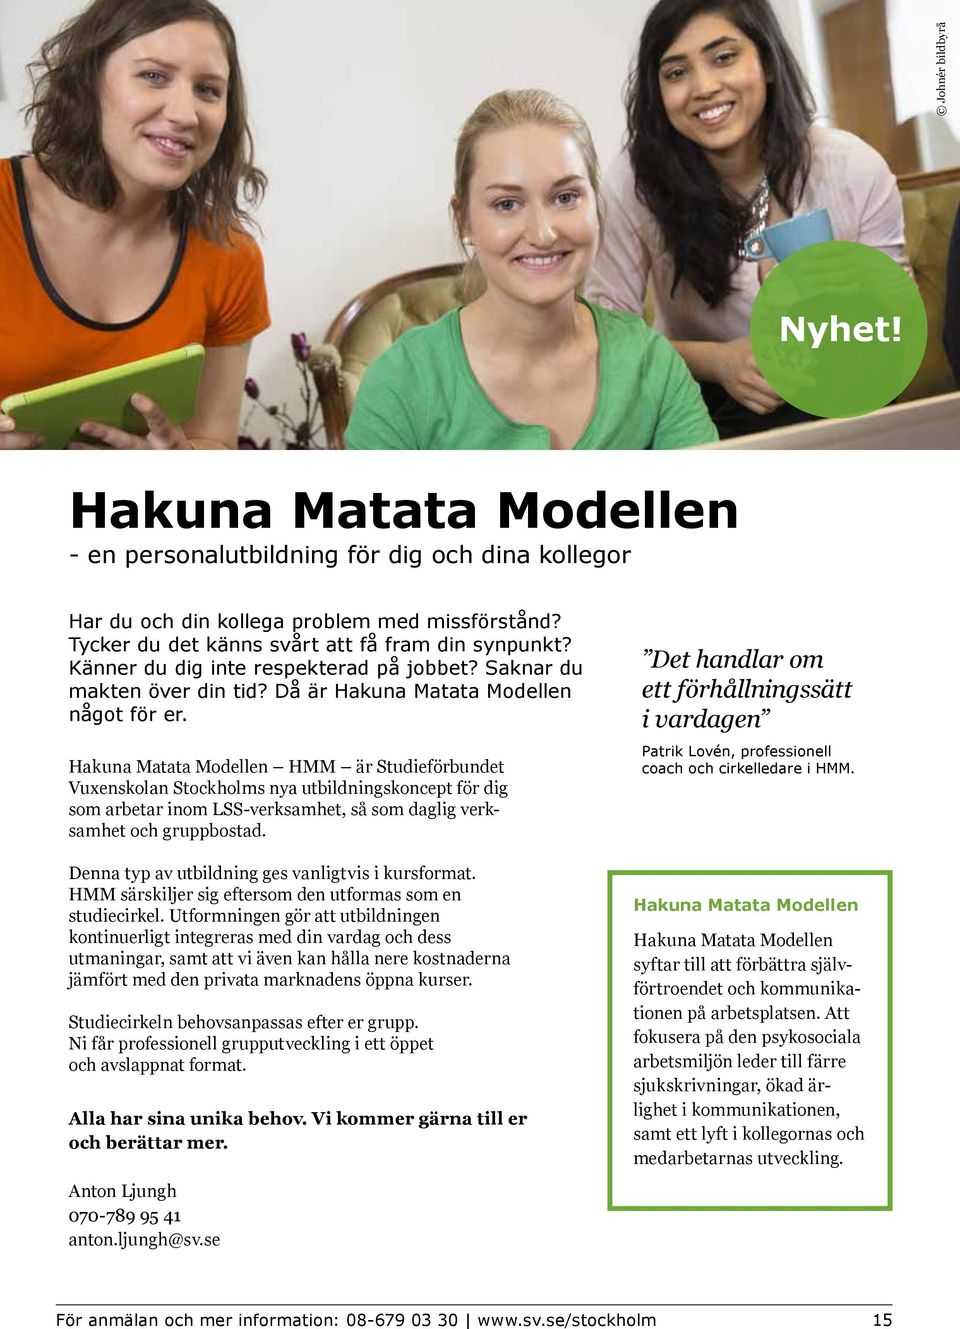 Hakuna Matata Modellen HMM är Studieförbundet Vuxenskolan Stockholms nya utbildningskoncept för dig som arbetar inom LSS-verksamhet, så som daglig verksamhet och gruppbostad.